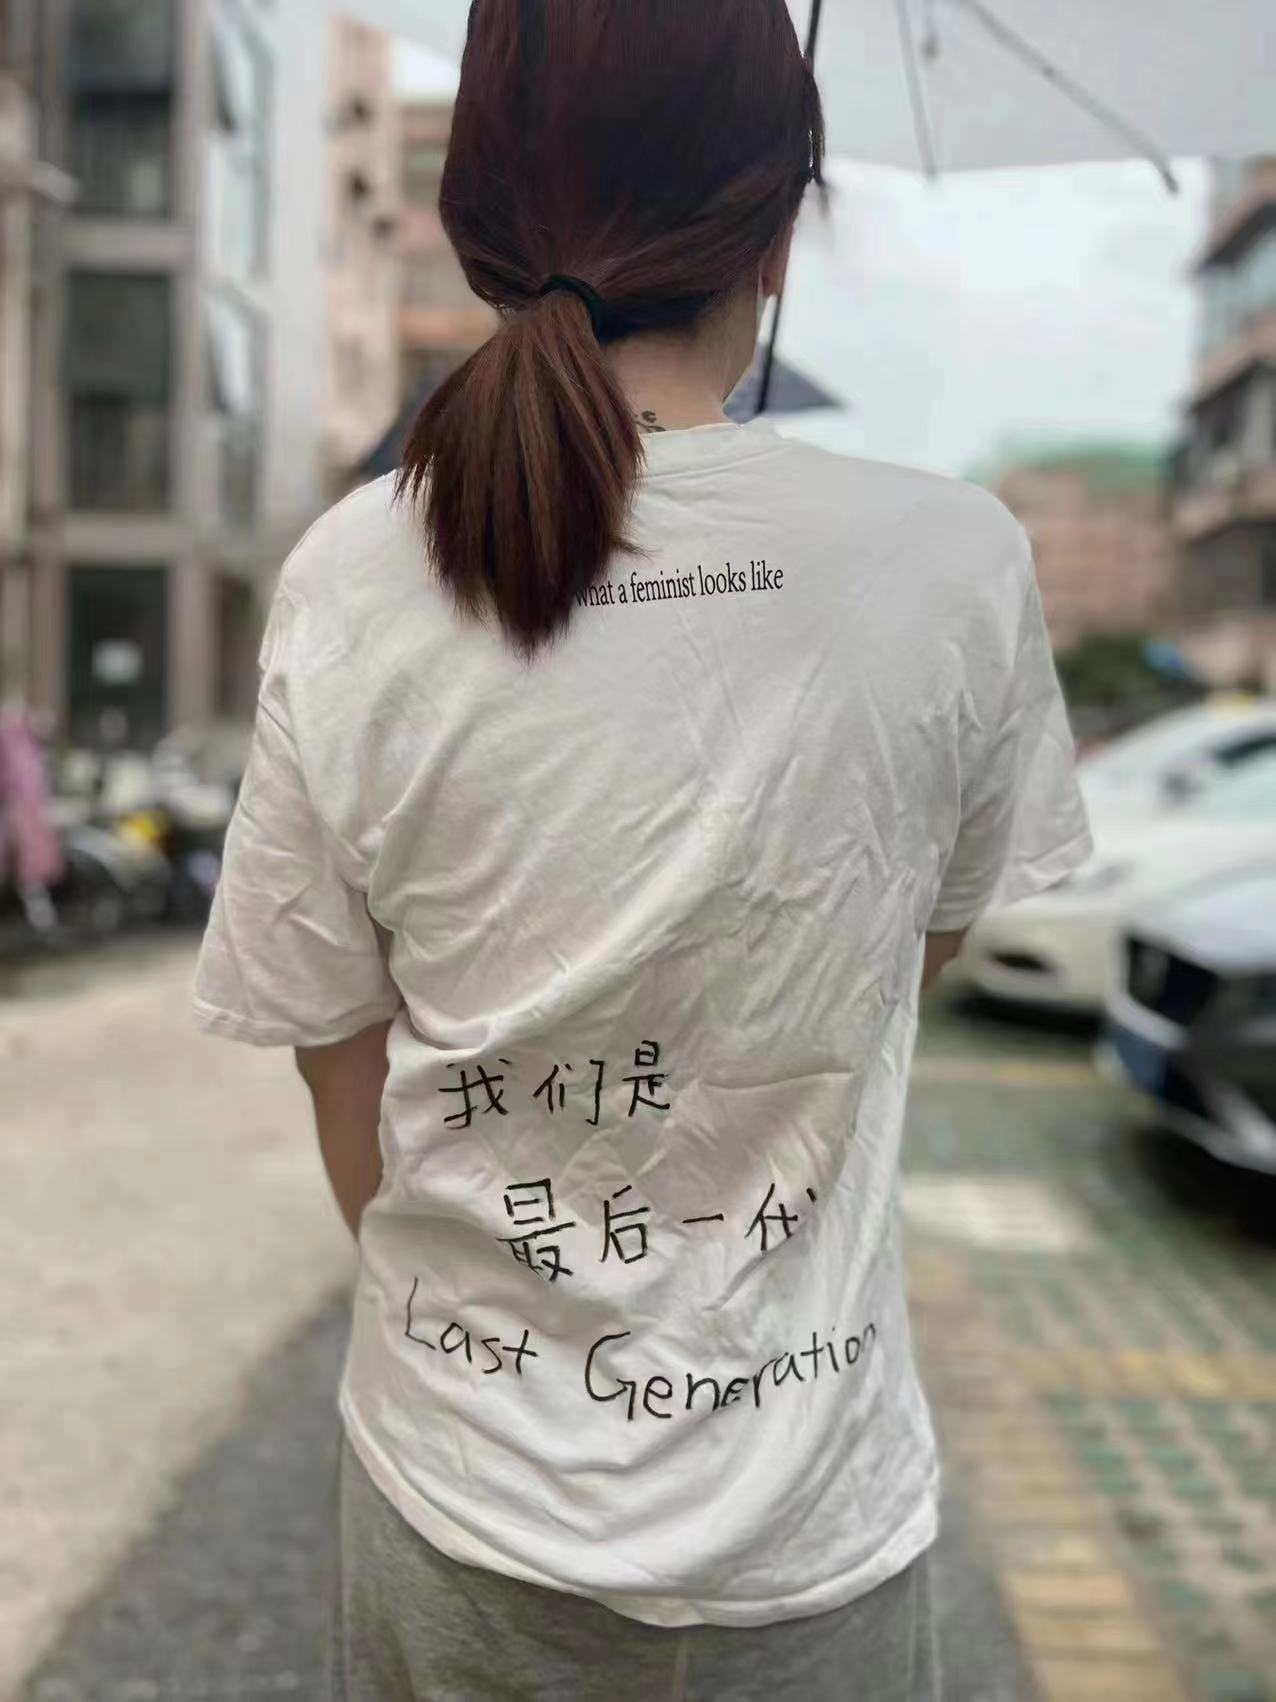 «Мы — последнее поколение» становится лозунгом разочарованных китайцев ⋆ Алиэкспресс Видео image 30